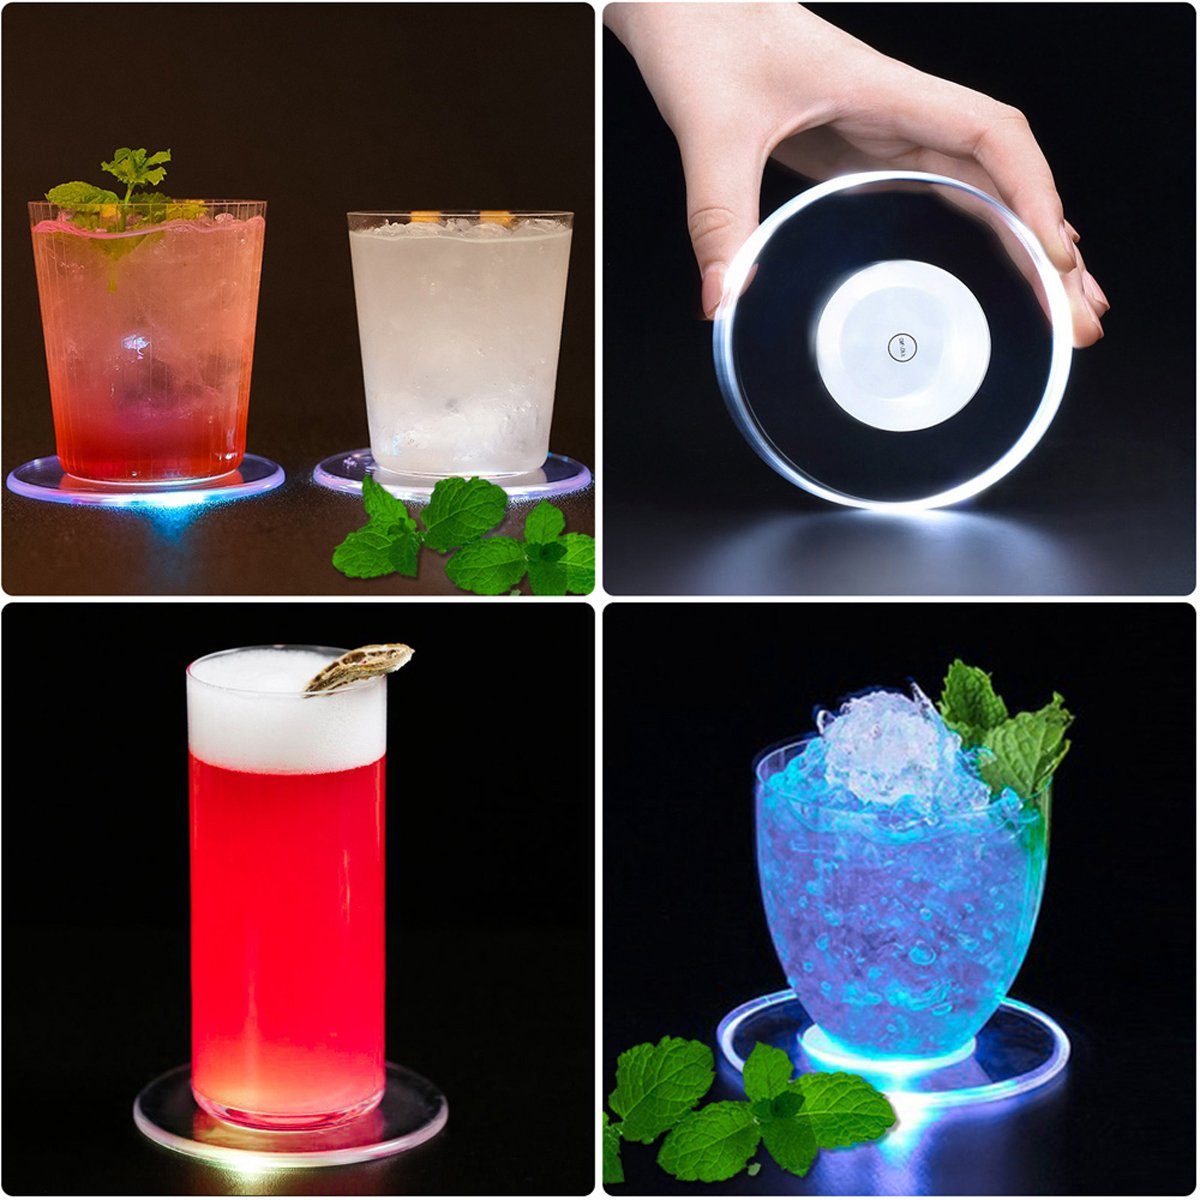 Jormftte Glasuntersetzer Bunt LED Leuchte Untersetzer Transparent2 Partys Bar Hochzeiten für Weihnachten